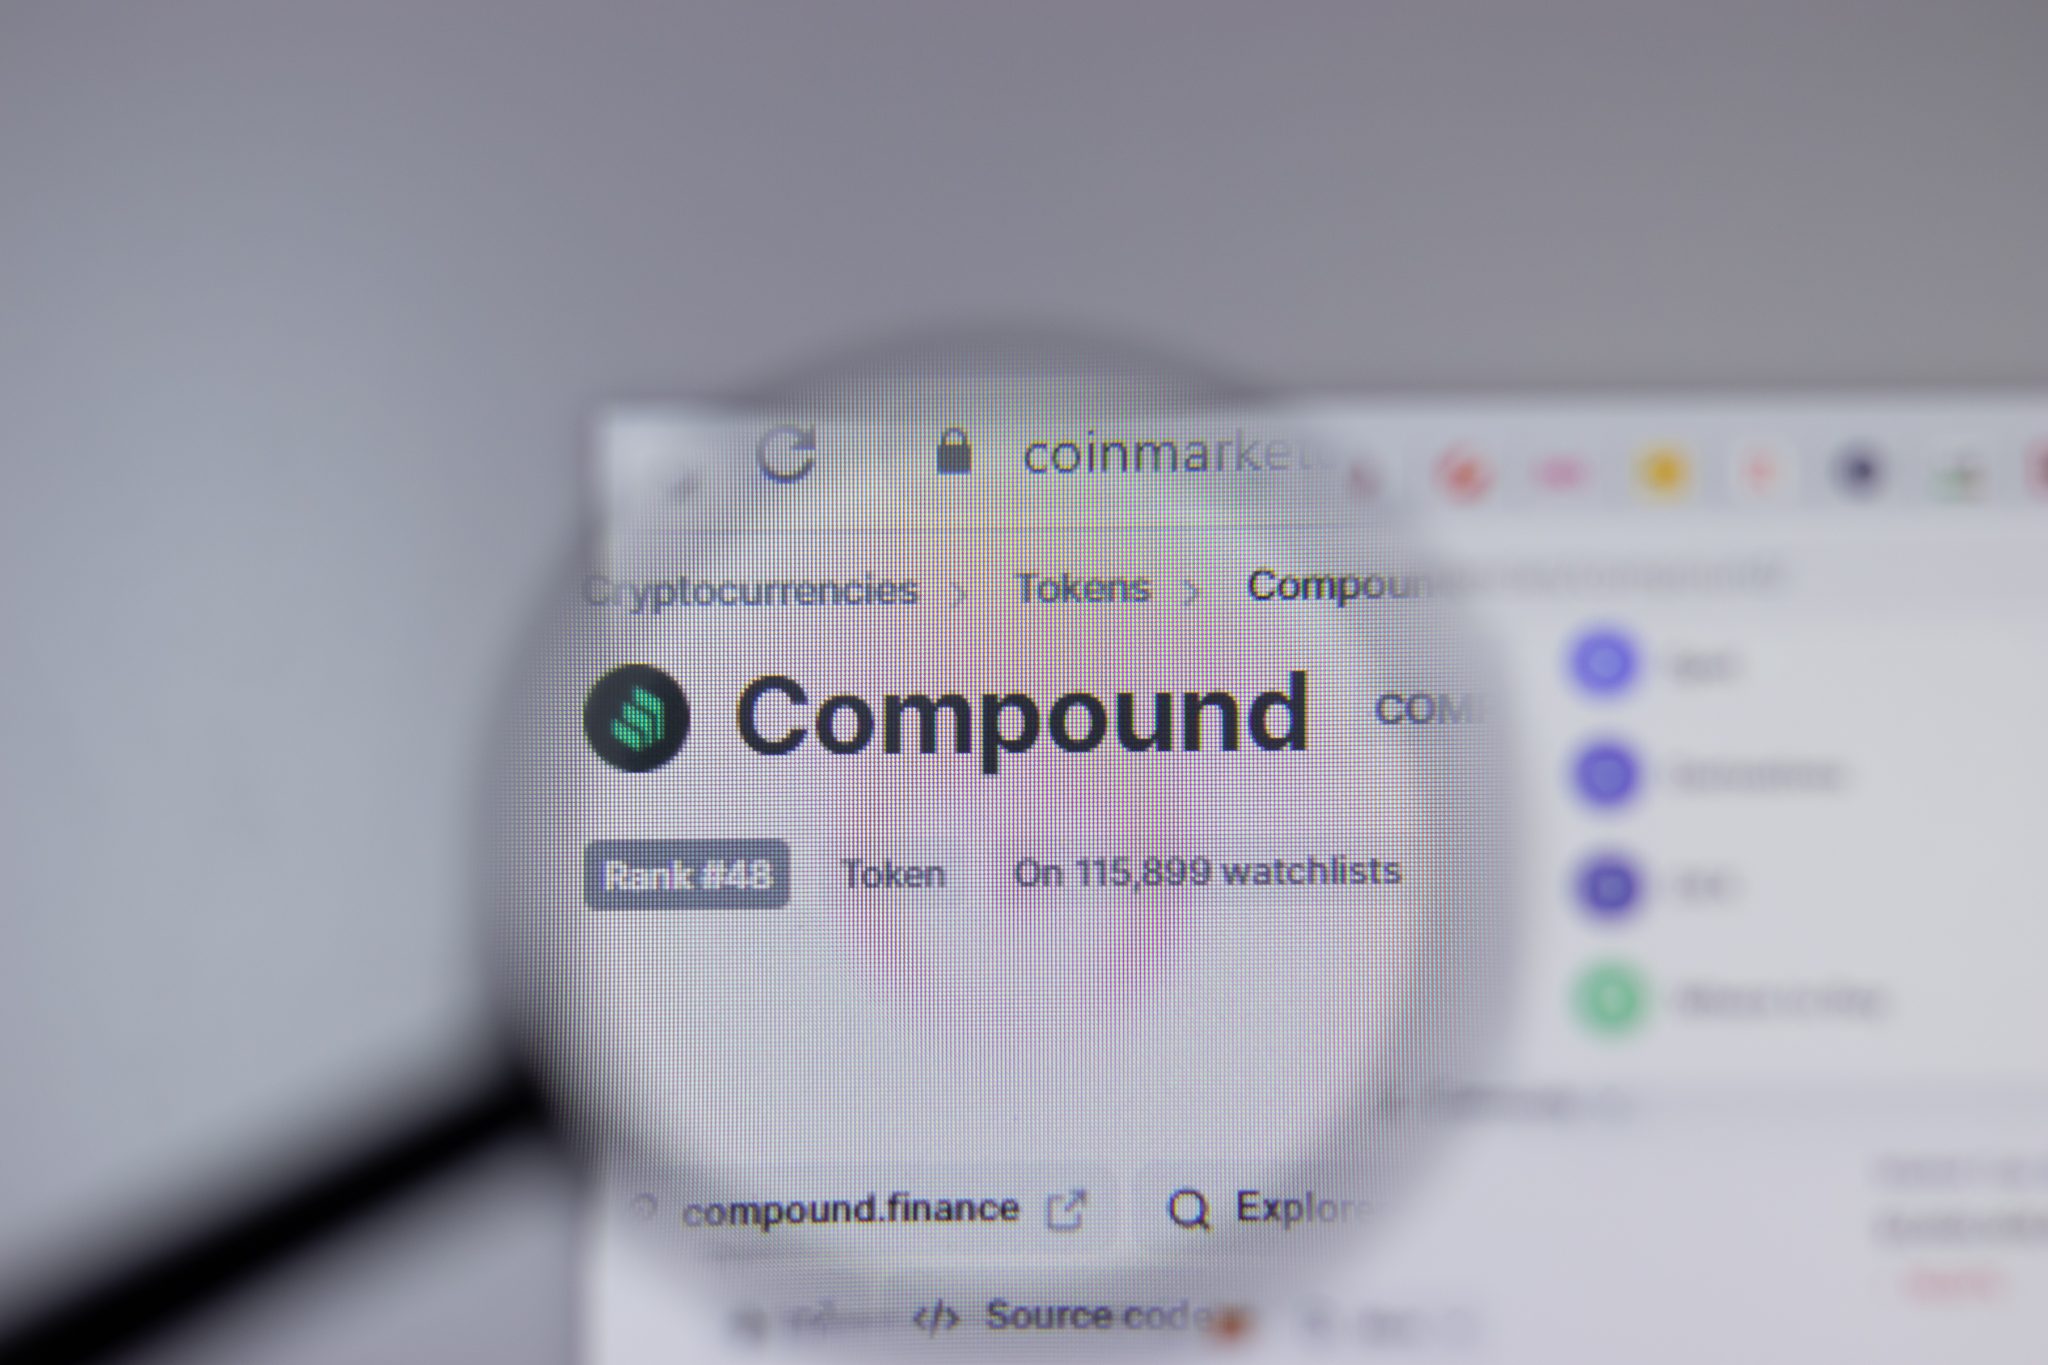 Suite à un bug, Compound distribue 90 millions $ à ses utilisateurs